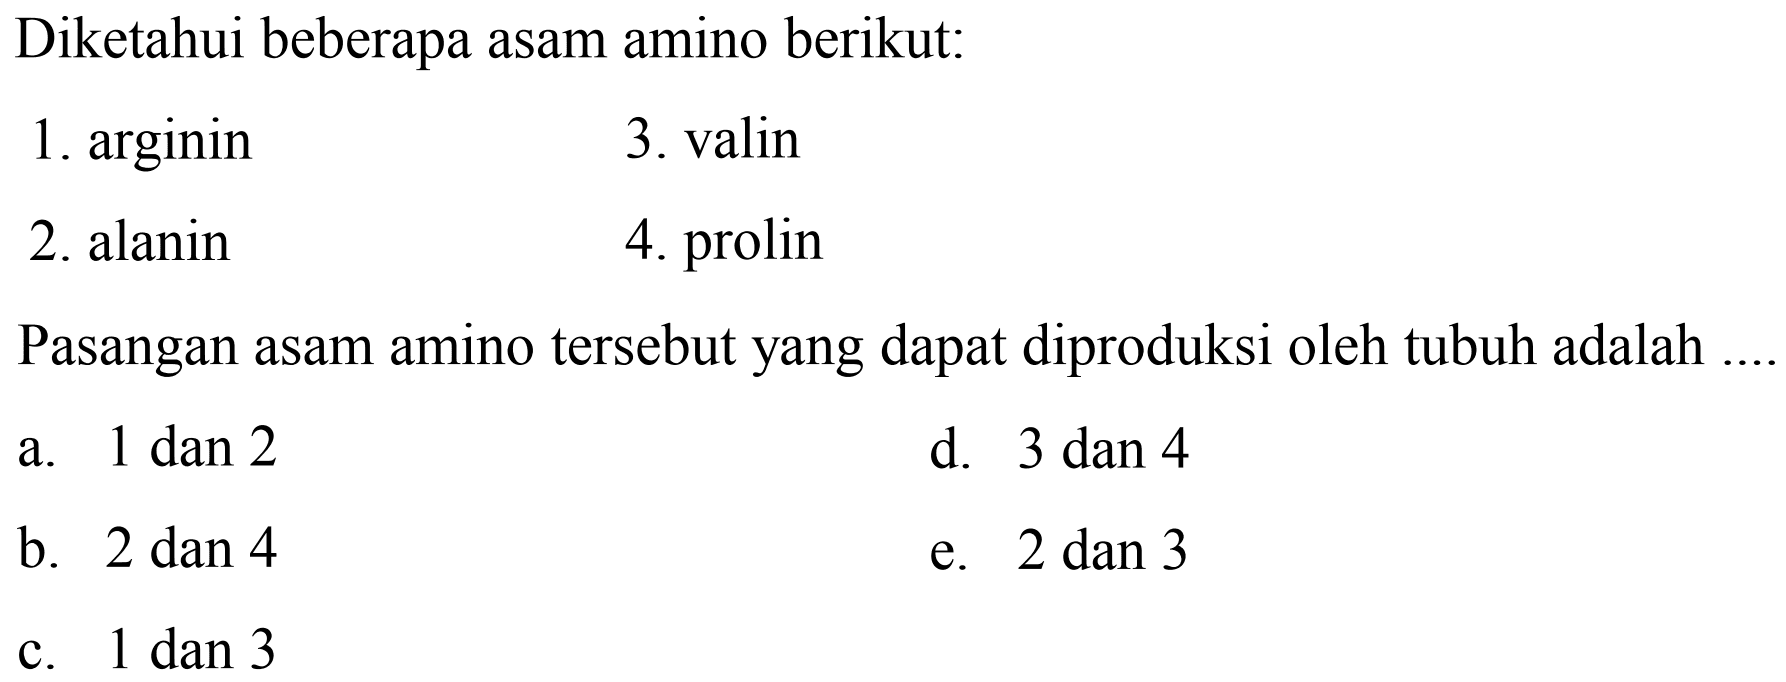 Diketahui beberapa asam amino berikut:
1. arginin
3. valin
2. alanin
4. prolin
Pasangan asam amino tersebut yang dapat diproduksi oleh tubuh adalah ....
a.  1 dan 2 
d. 3 dan 4
b. 2 dan 4
e.  2 dan 3 
c.  1 dan 3 